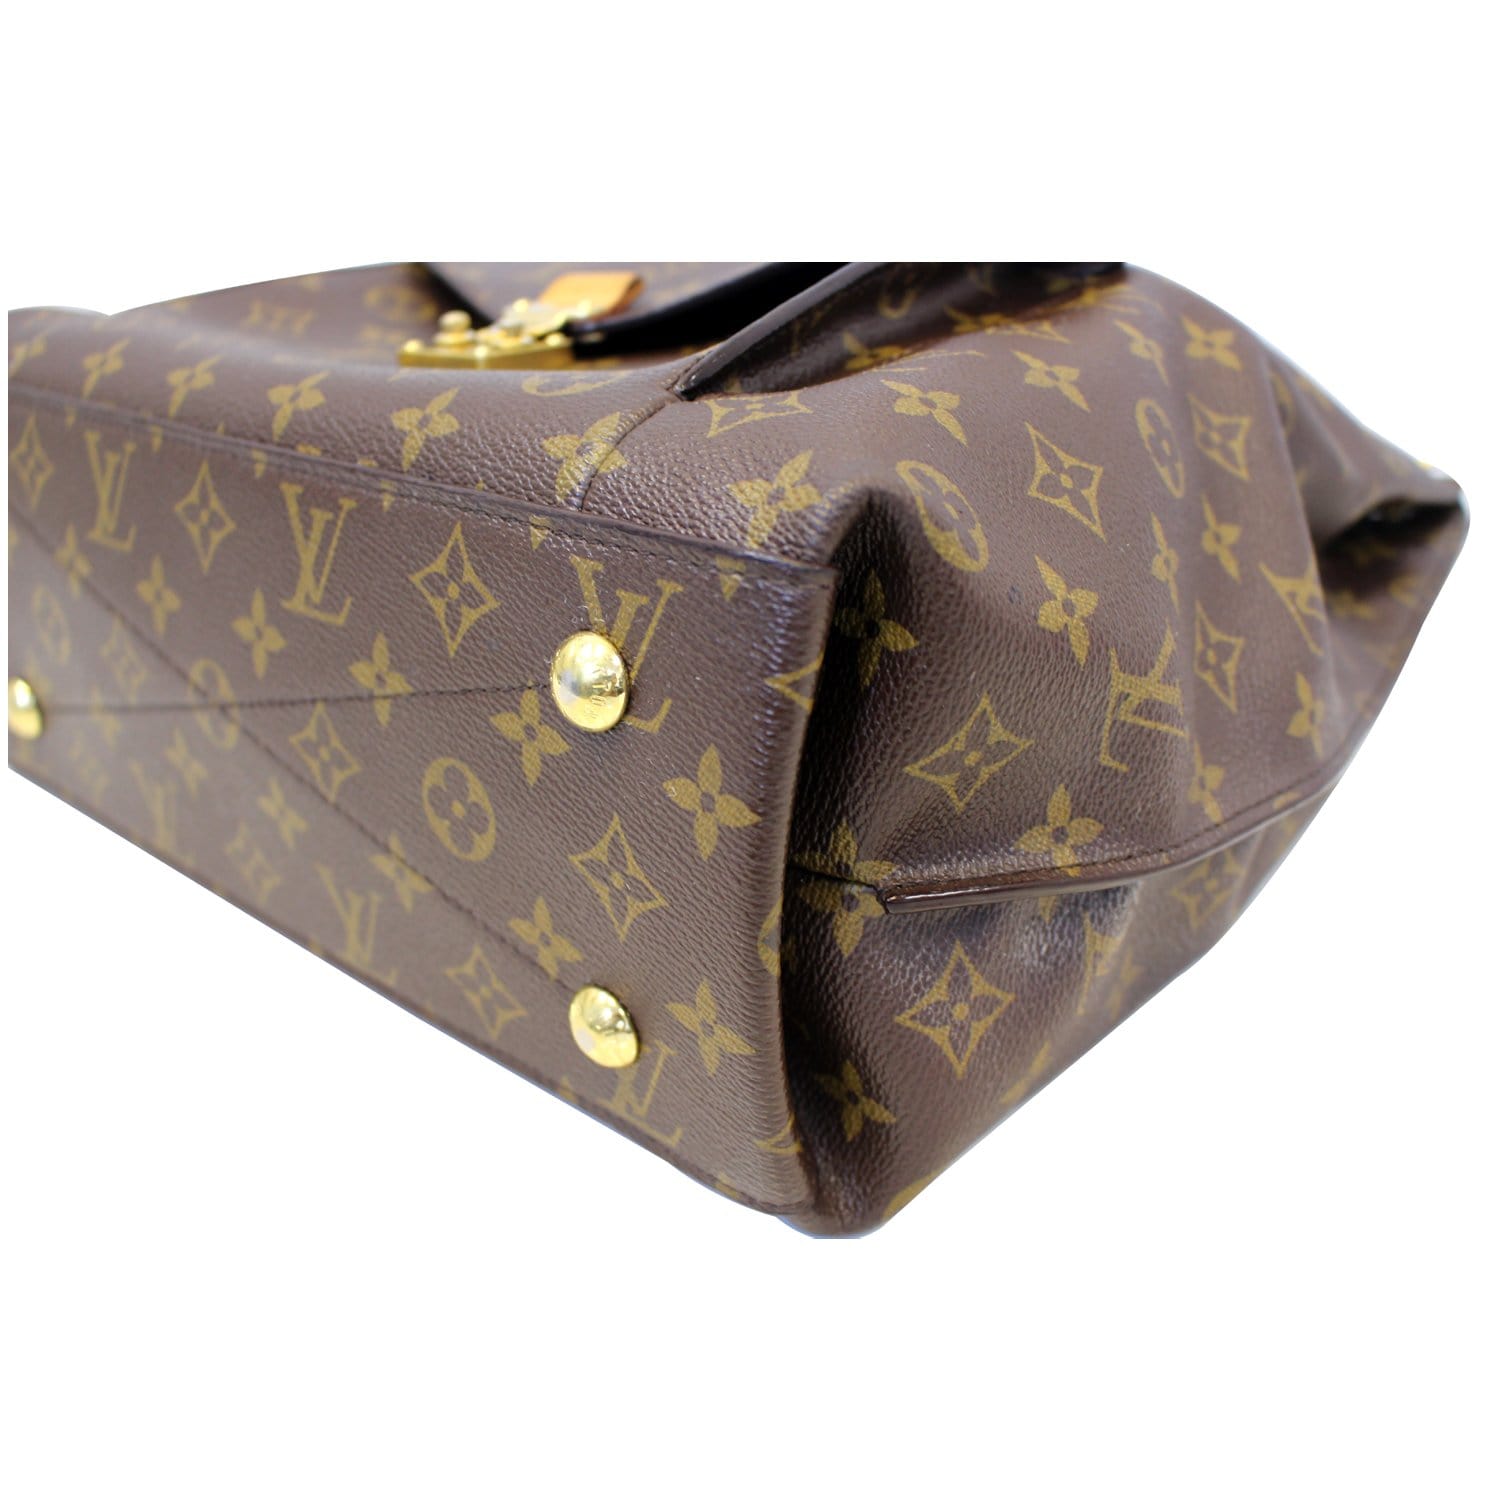 Louis Vuitton Monogram Canvas Metis Hobo Bag - ShopperBoard